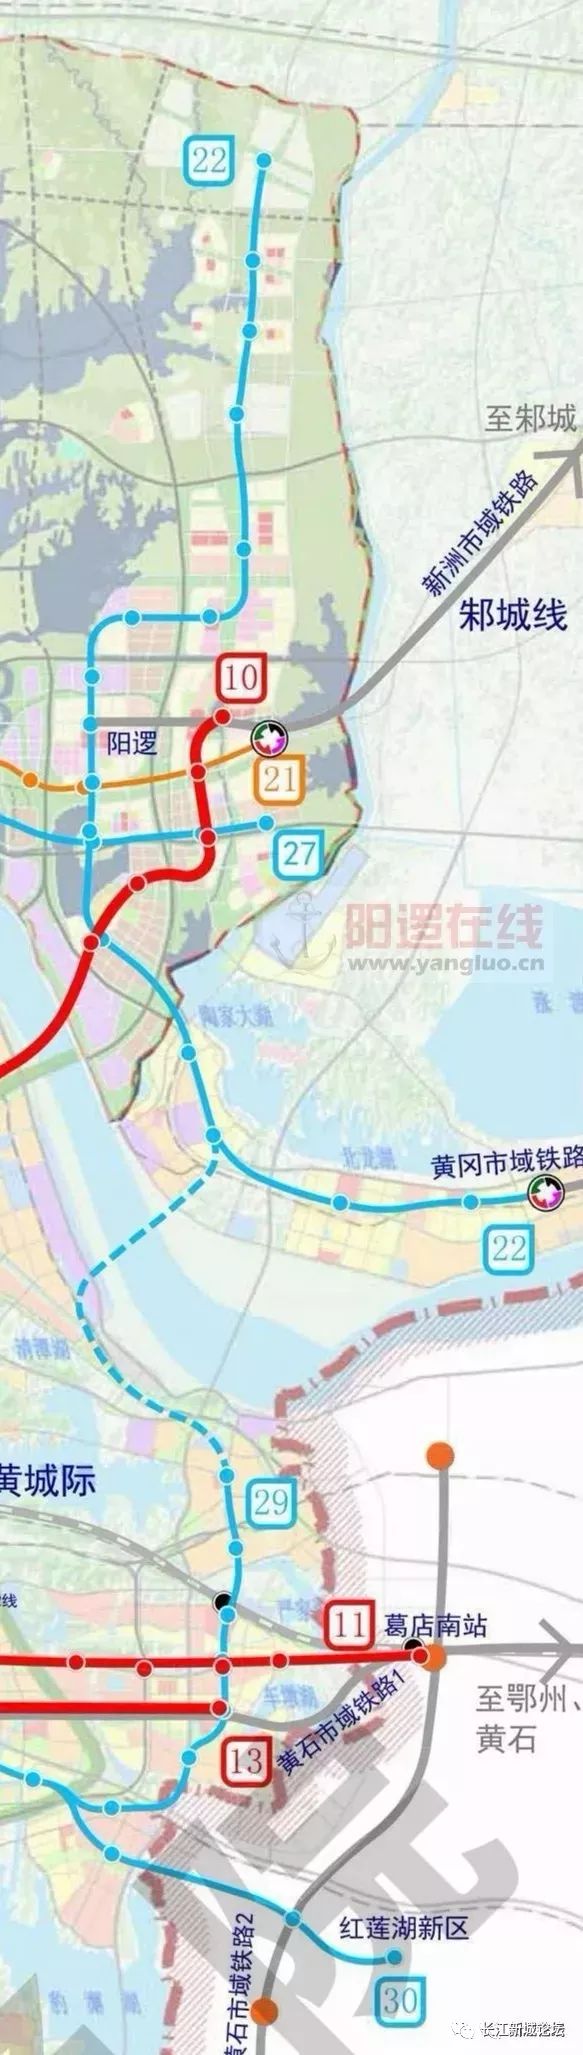 武汉地铁22号线途径仓埠,阳逻,双柳,拟纳入第五轮规划